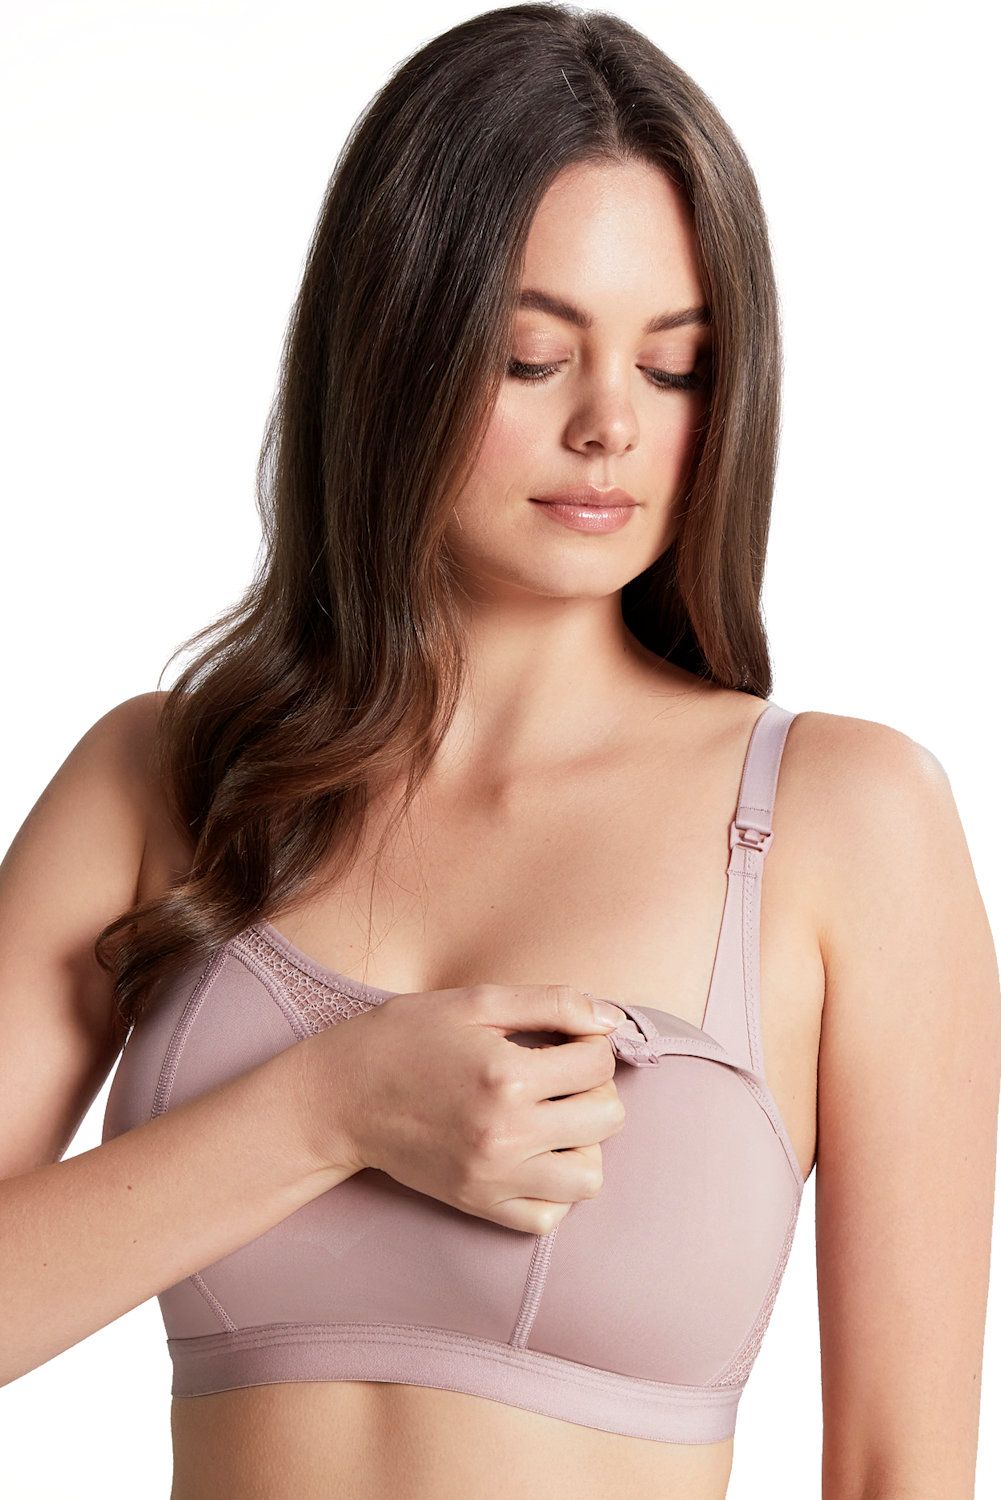 Nursing Bra Underwire Support Padded Women's Bra Breastfeeding Underwear  (Color : Blue, Size : 48C)